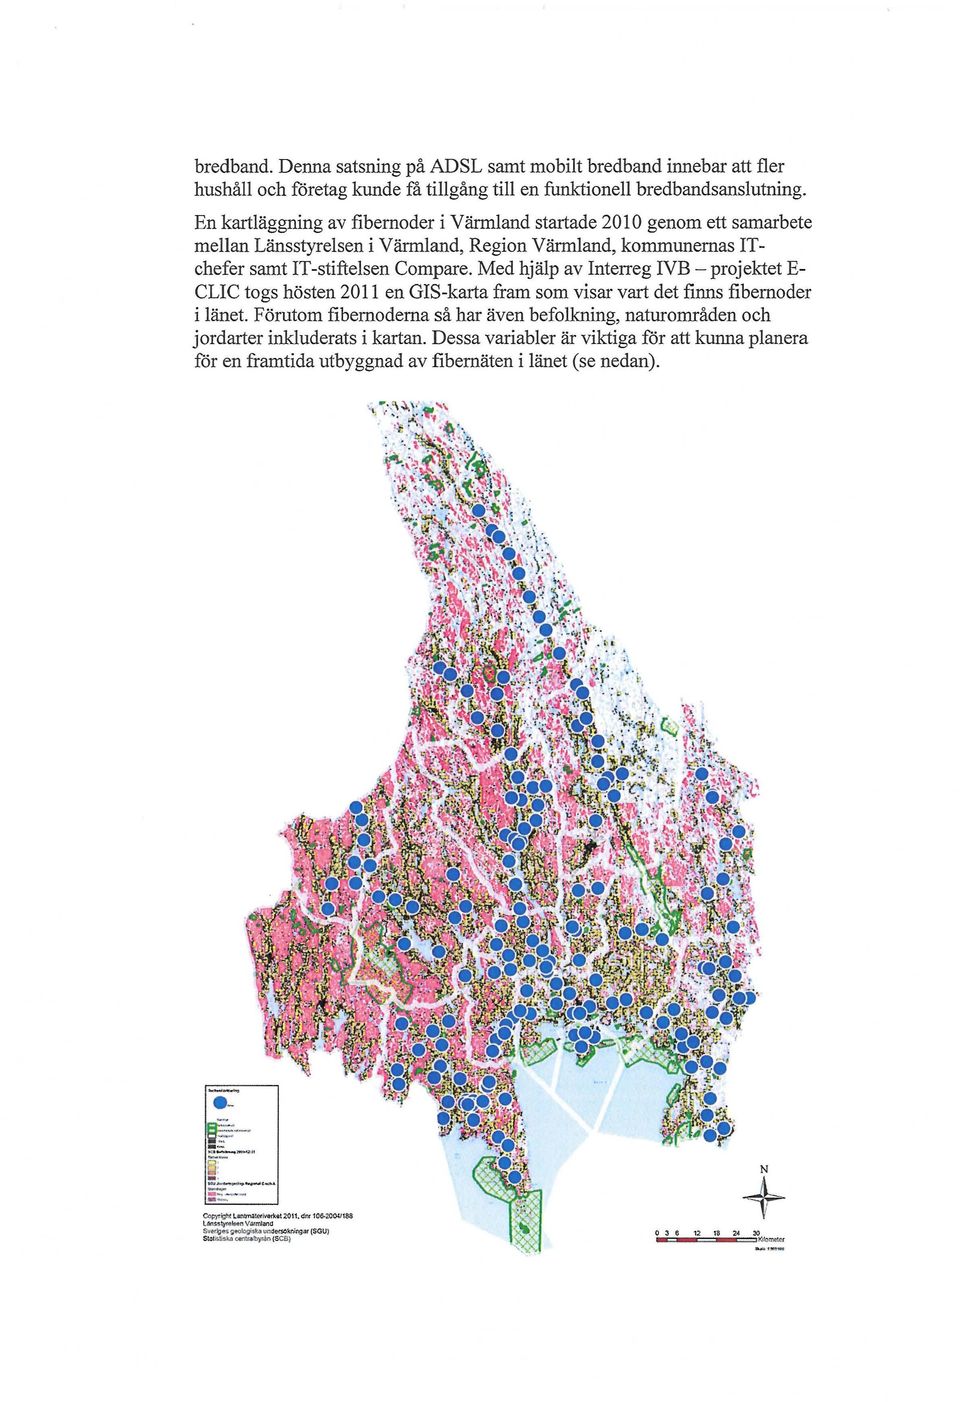 Med hjälp av Interreg IVB - projektet E CLIC togs hösten 2011 en GIS-karta fram som visar vart det finns fibernoder i länet.